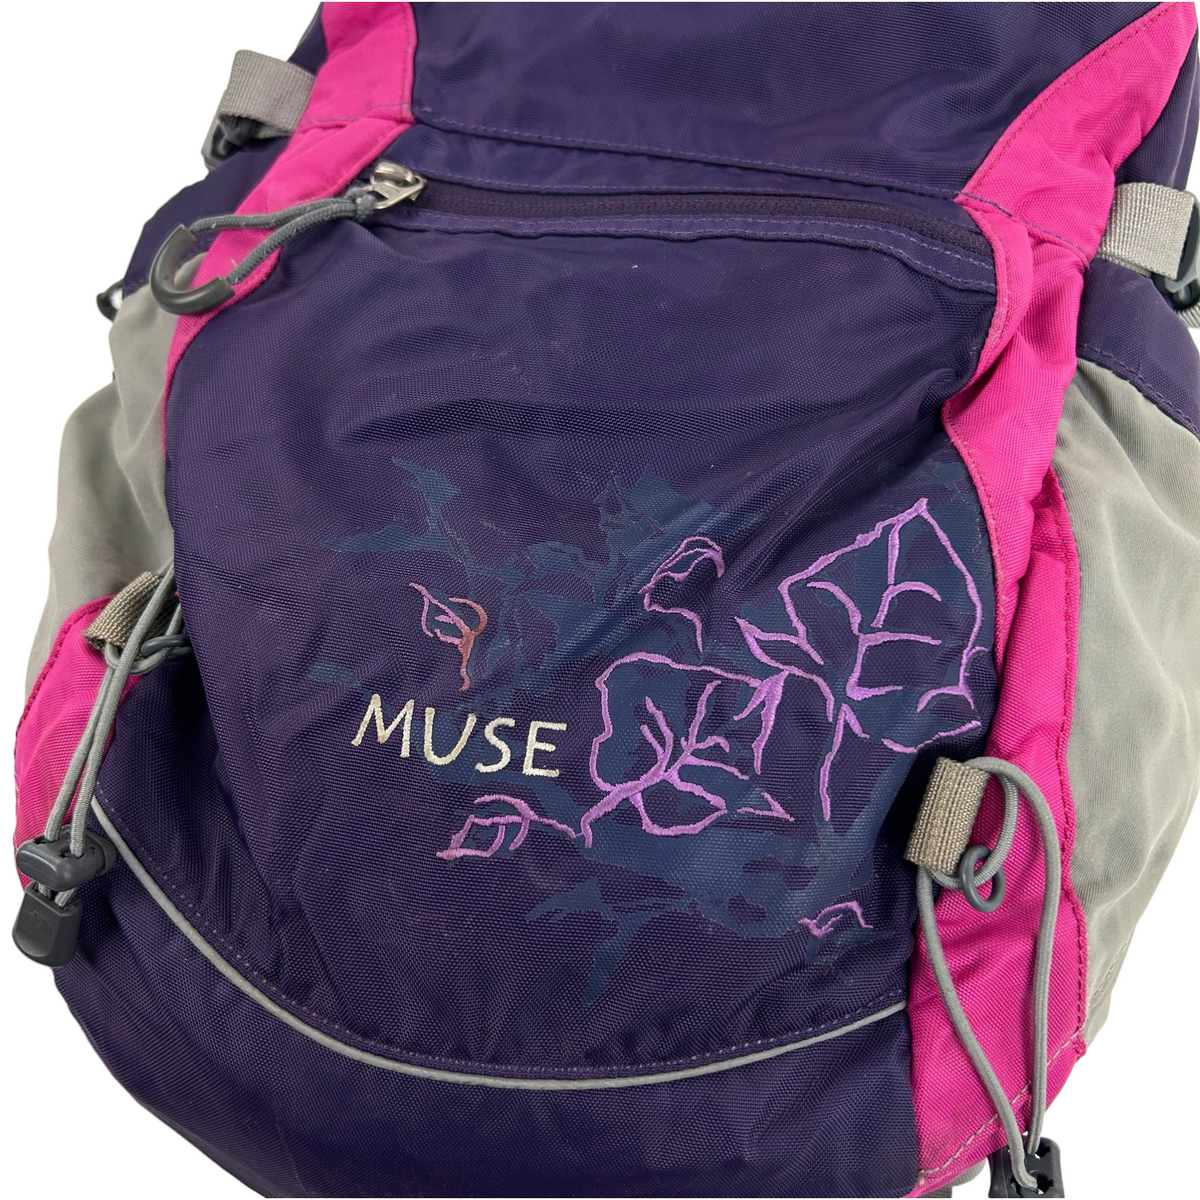 Vintage The North Face Muse Leaf Backpack